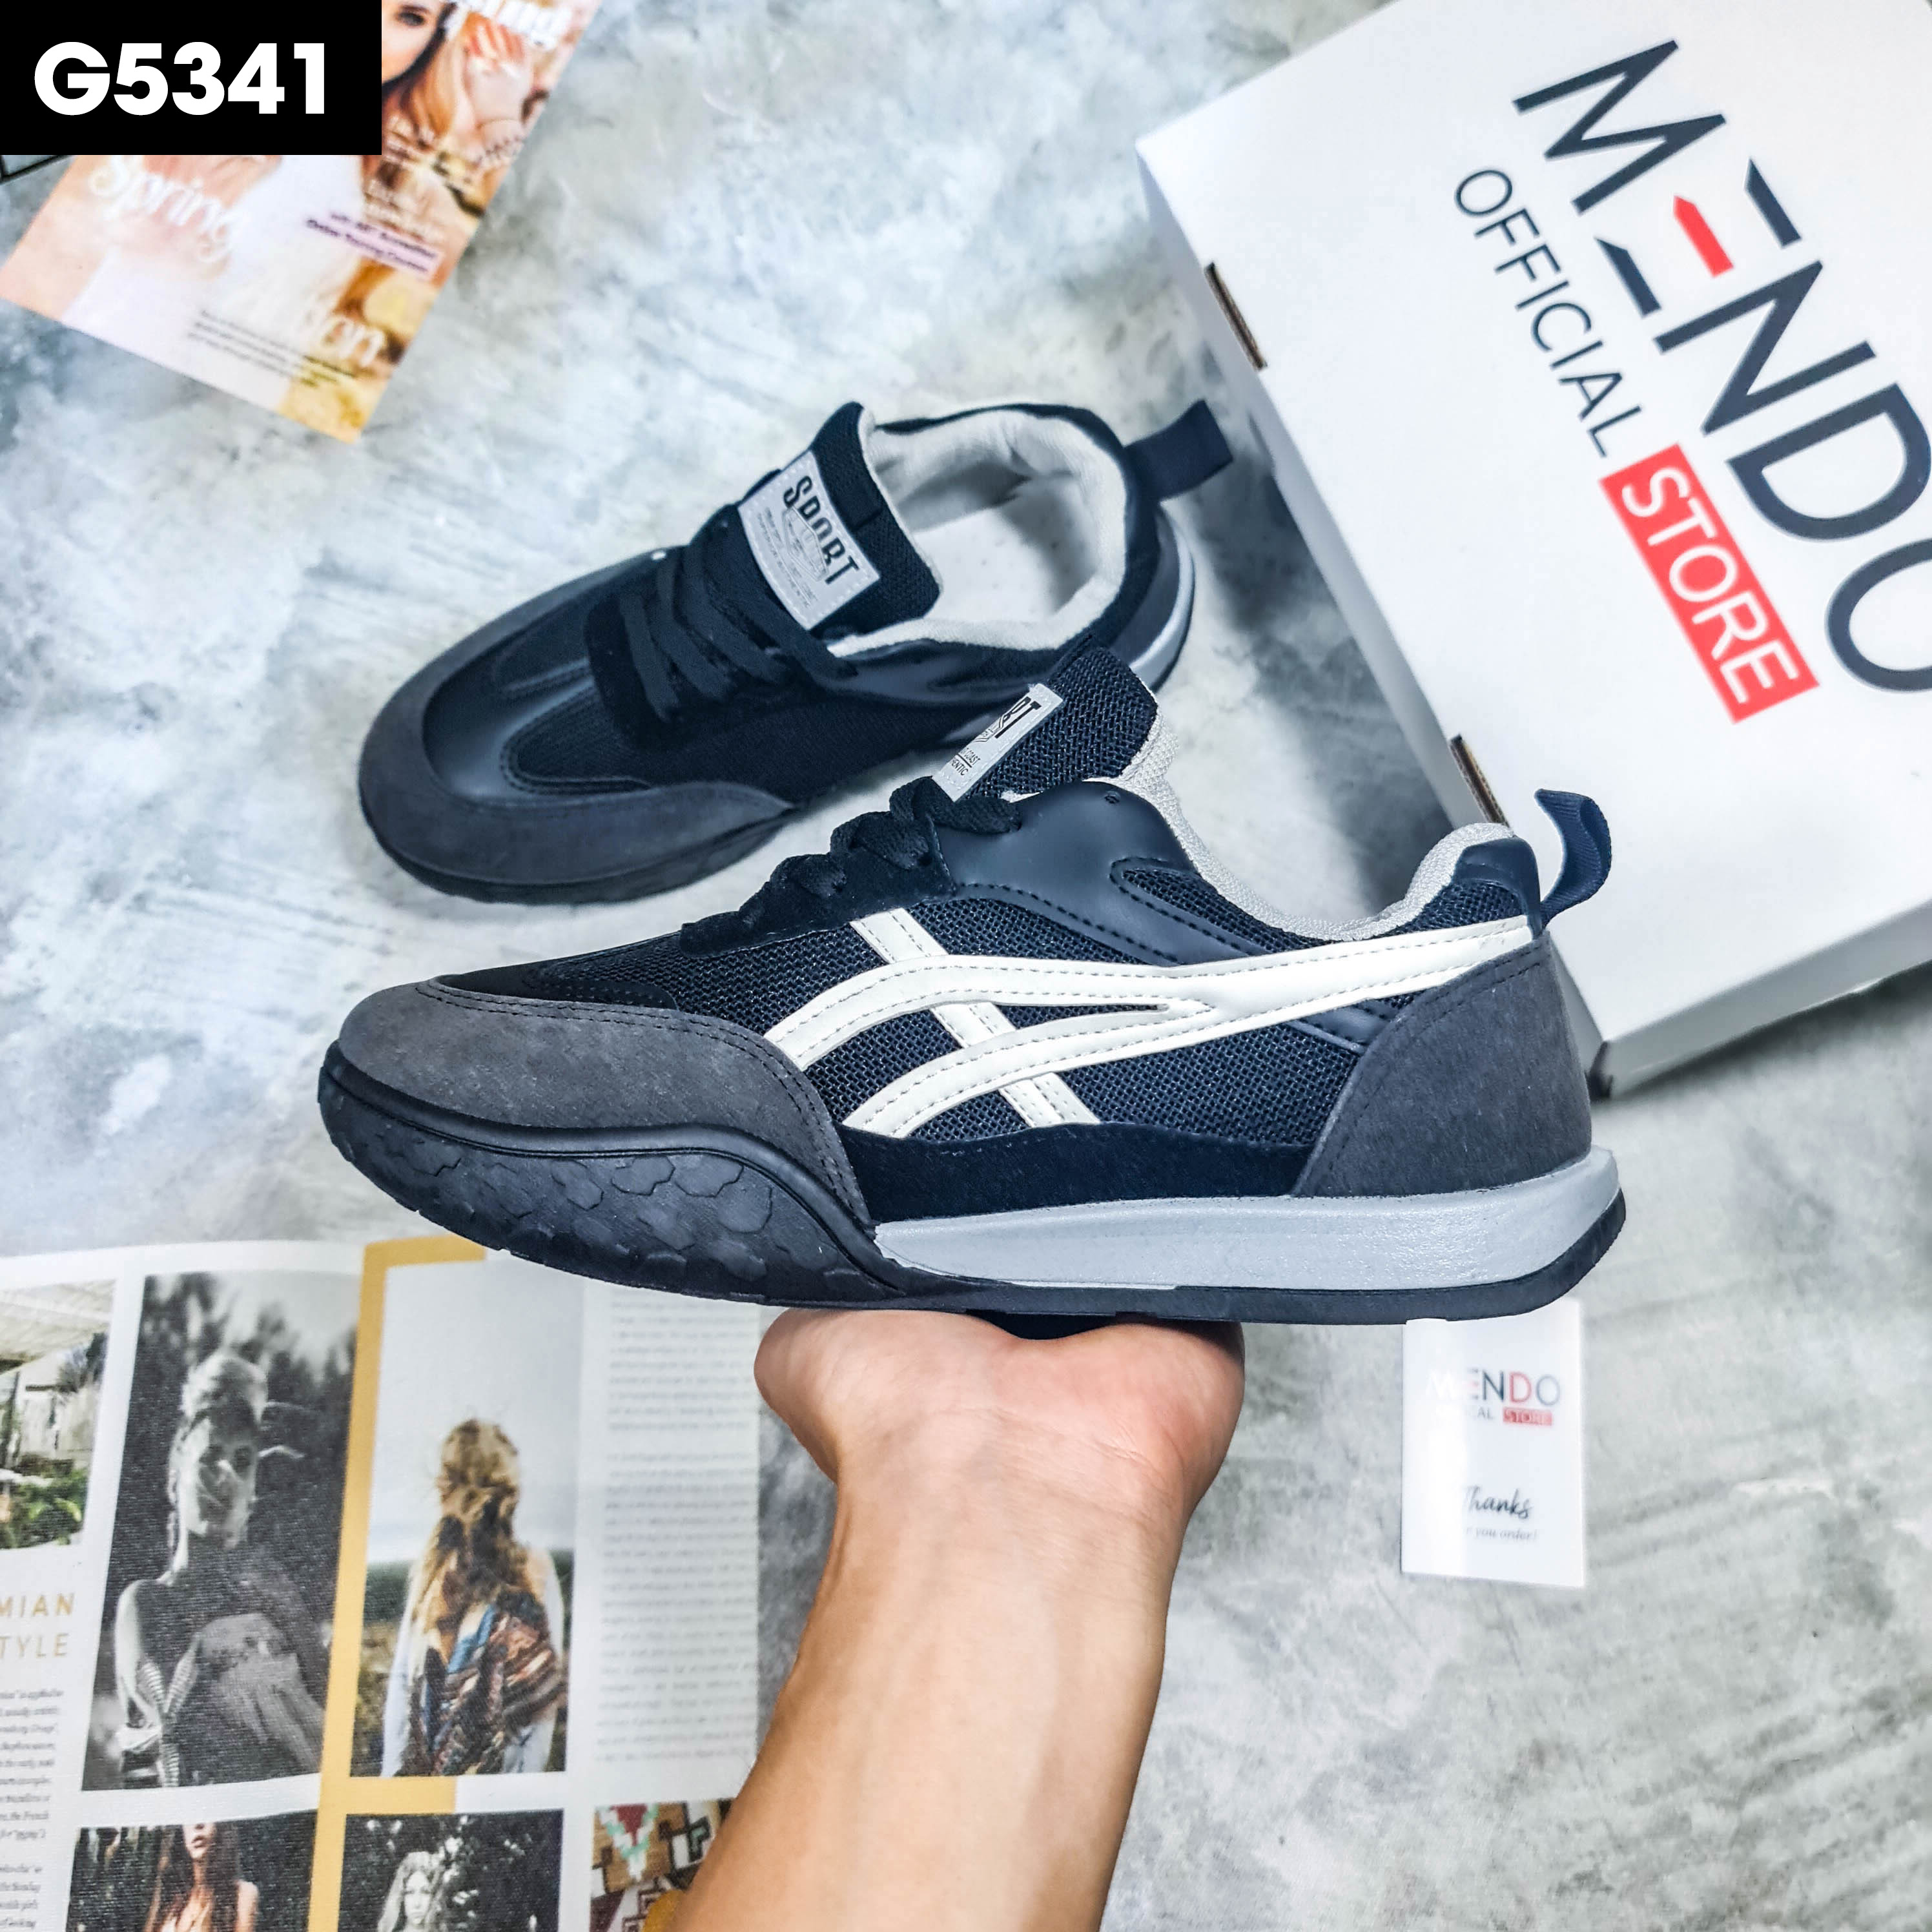 Giày Thể Thao Nam MENDO - Giày Sneaker Màu Kaki - Trắng - Đen, Giày Thể Thao Dáng Hàn Quốc, Phù Hợp Mọi Lứa Tuổi  - G5351